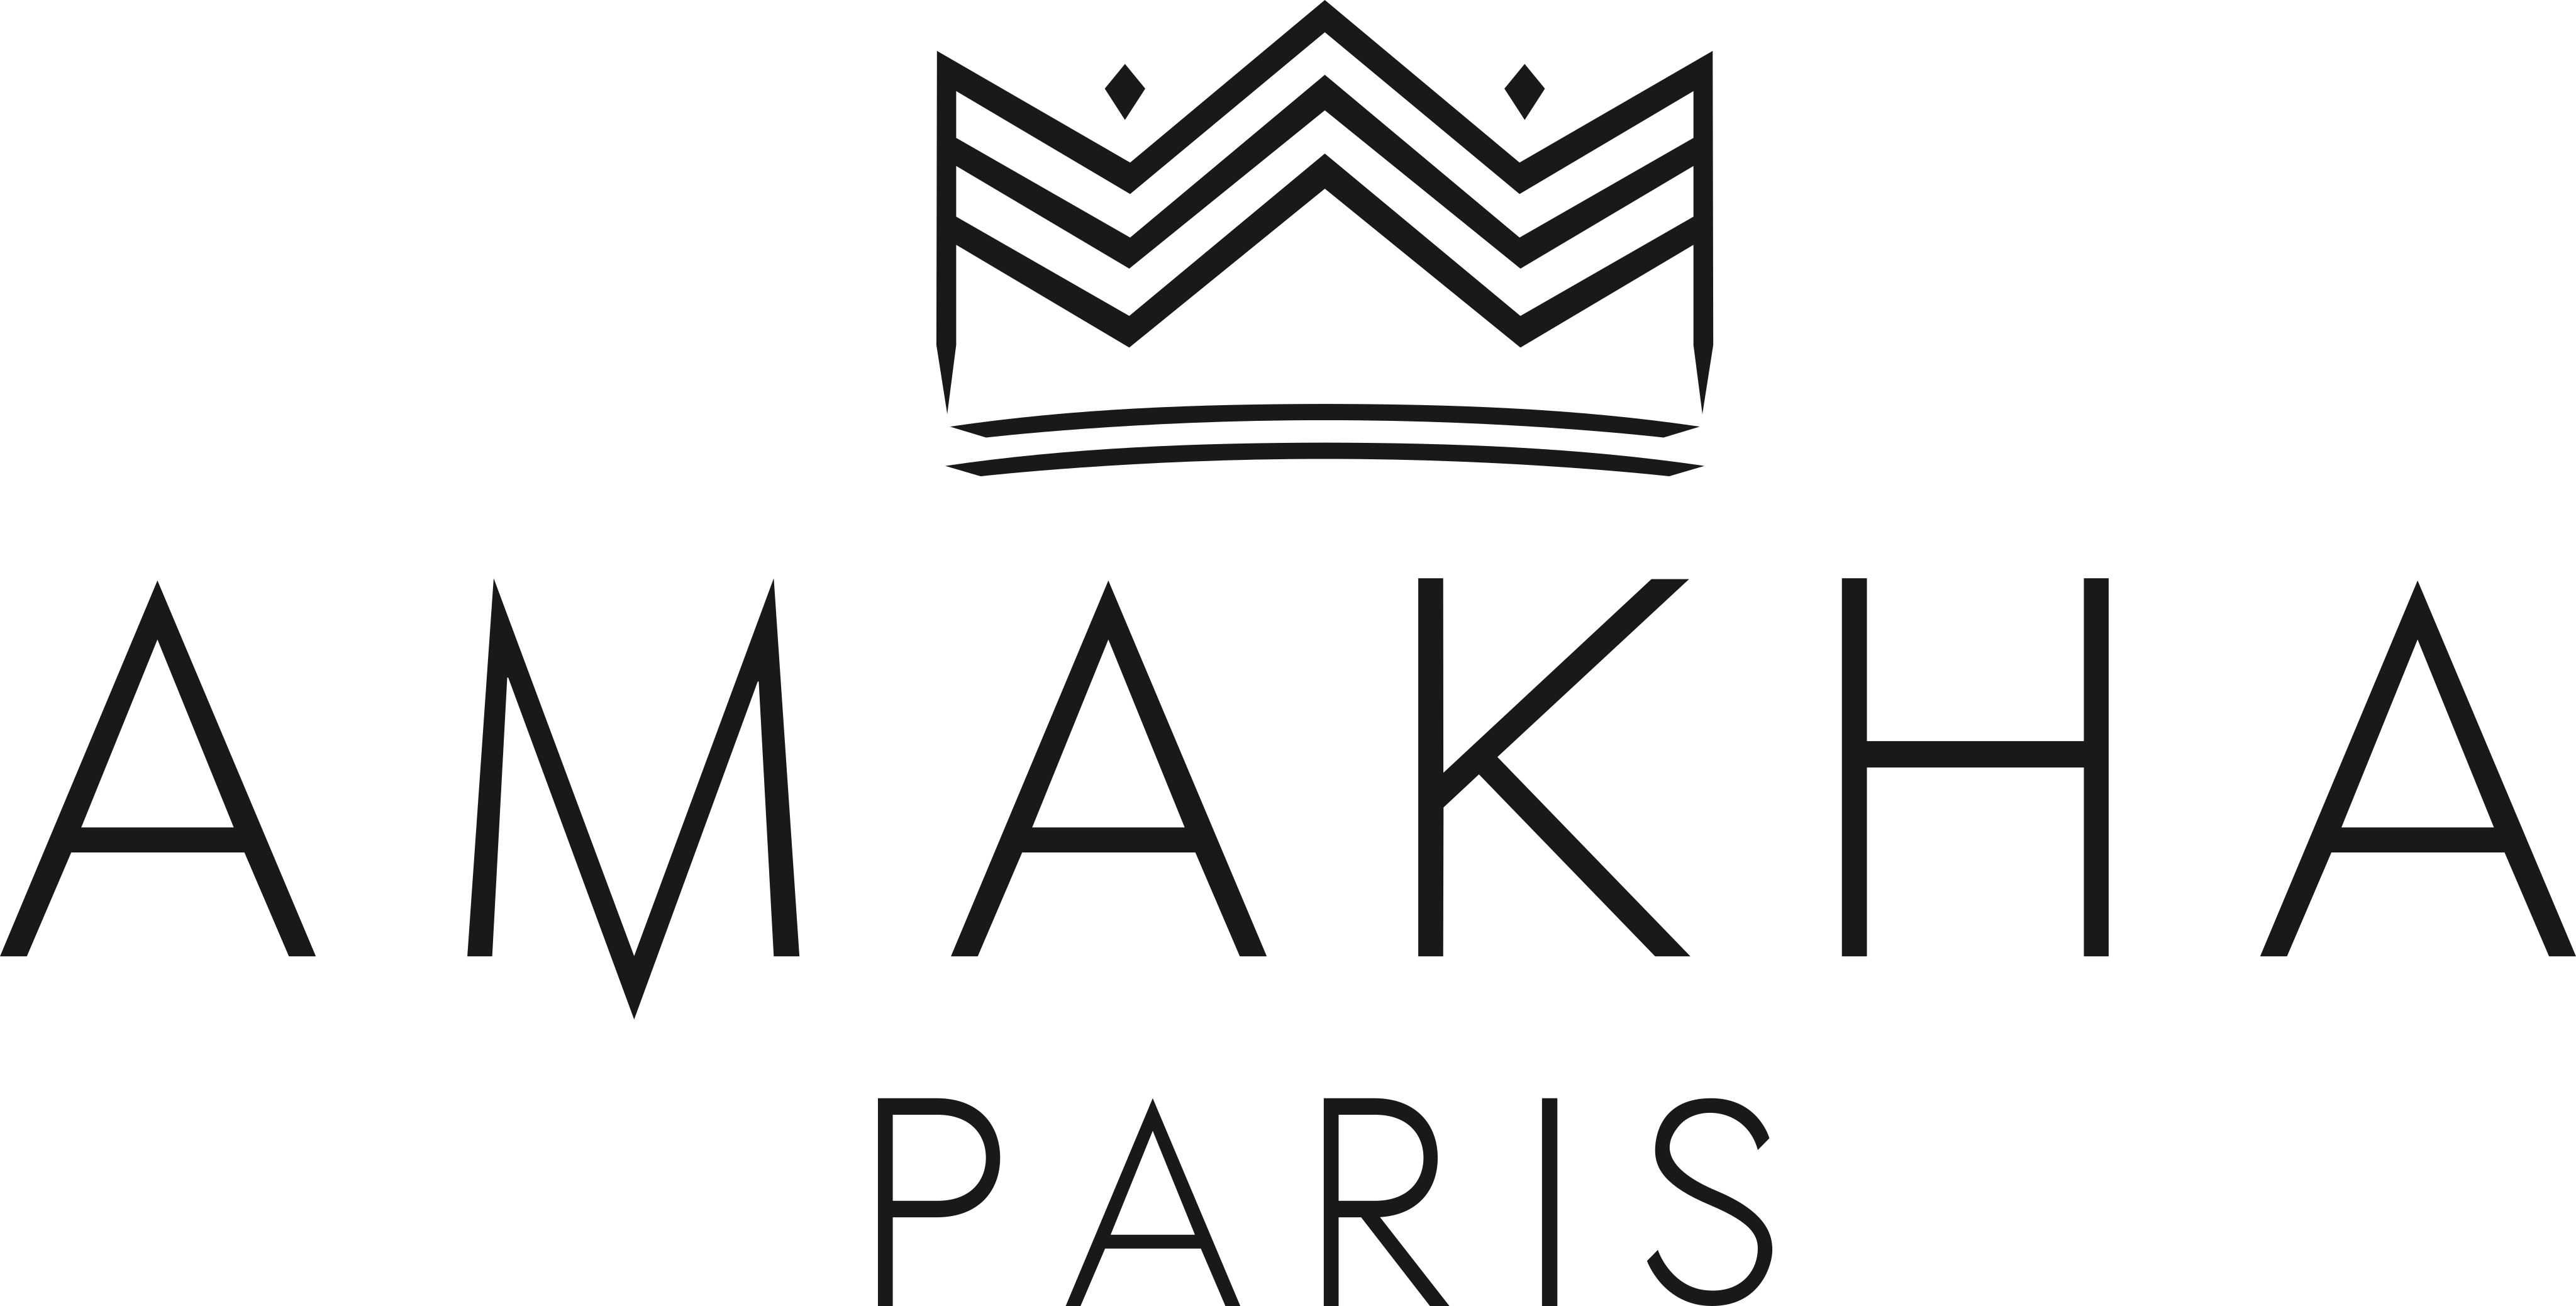 Amakha Paris